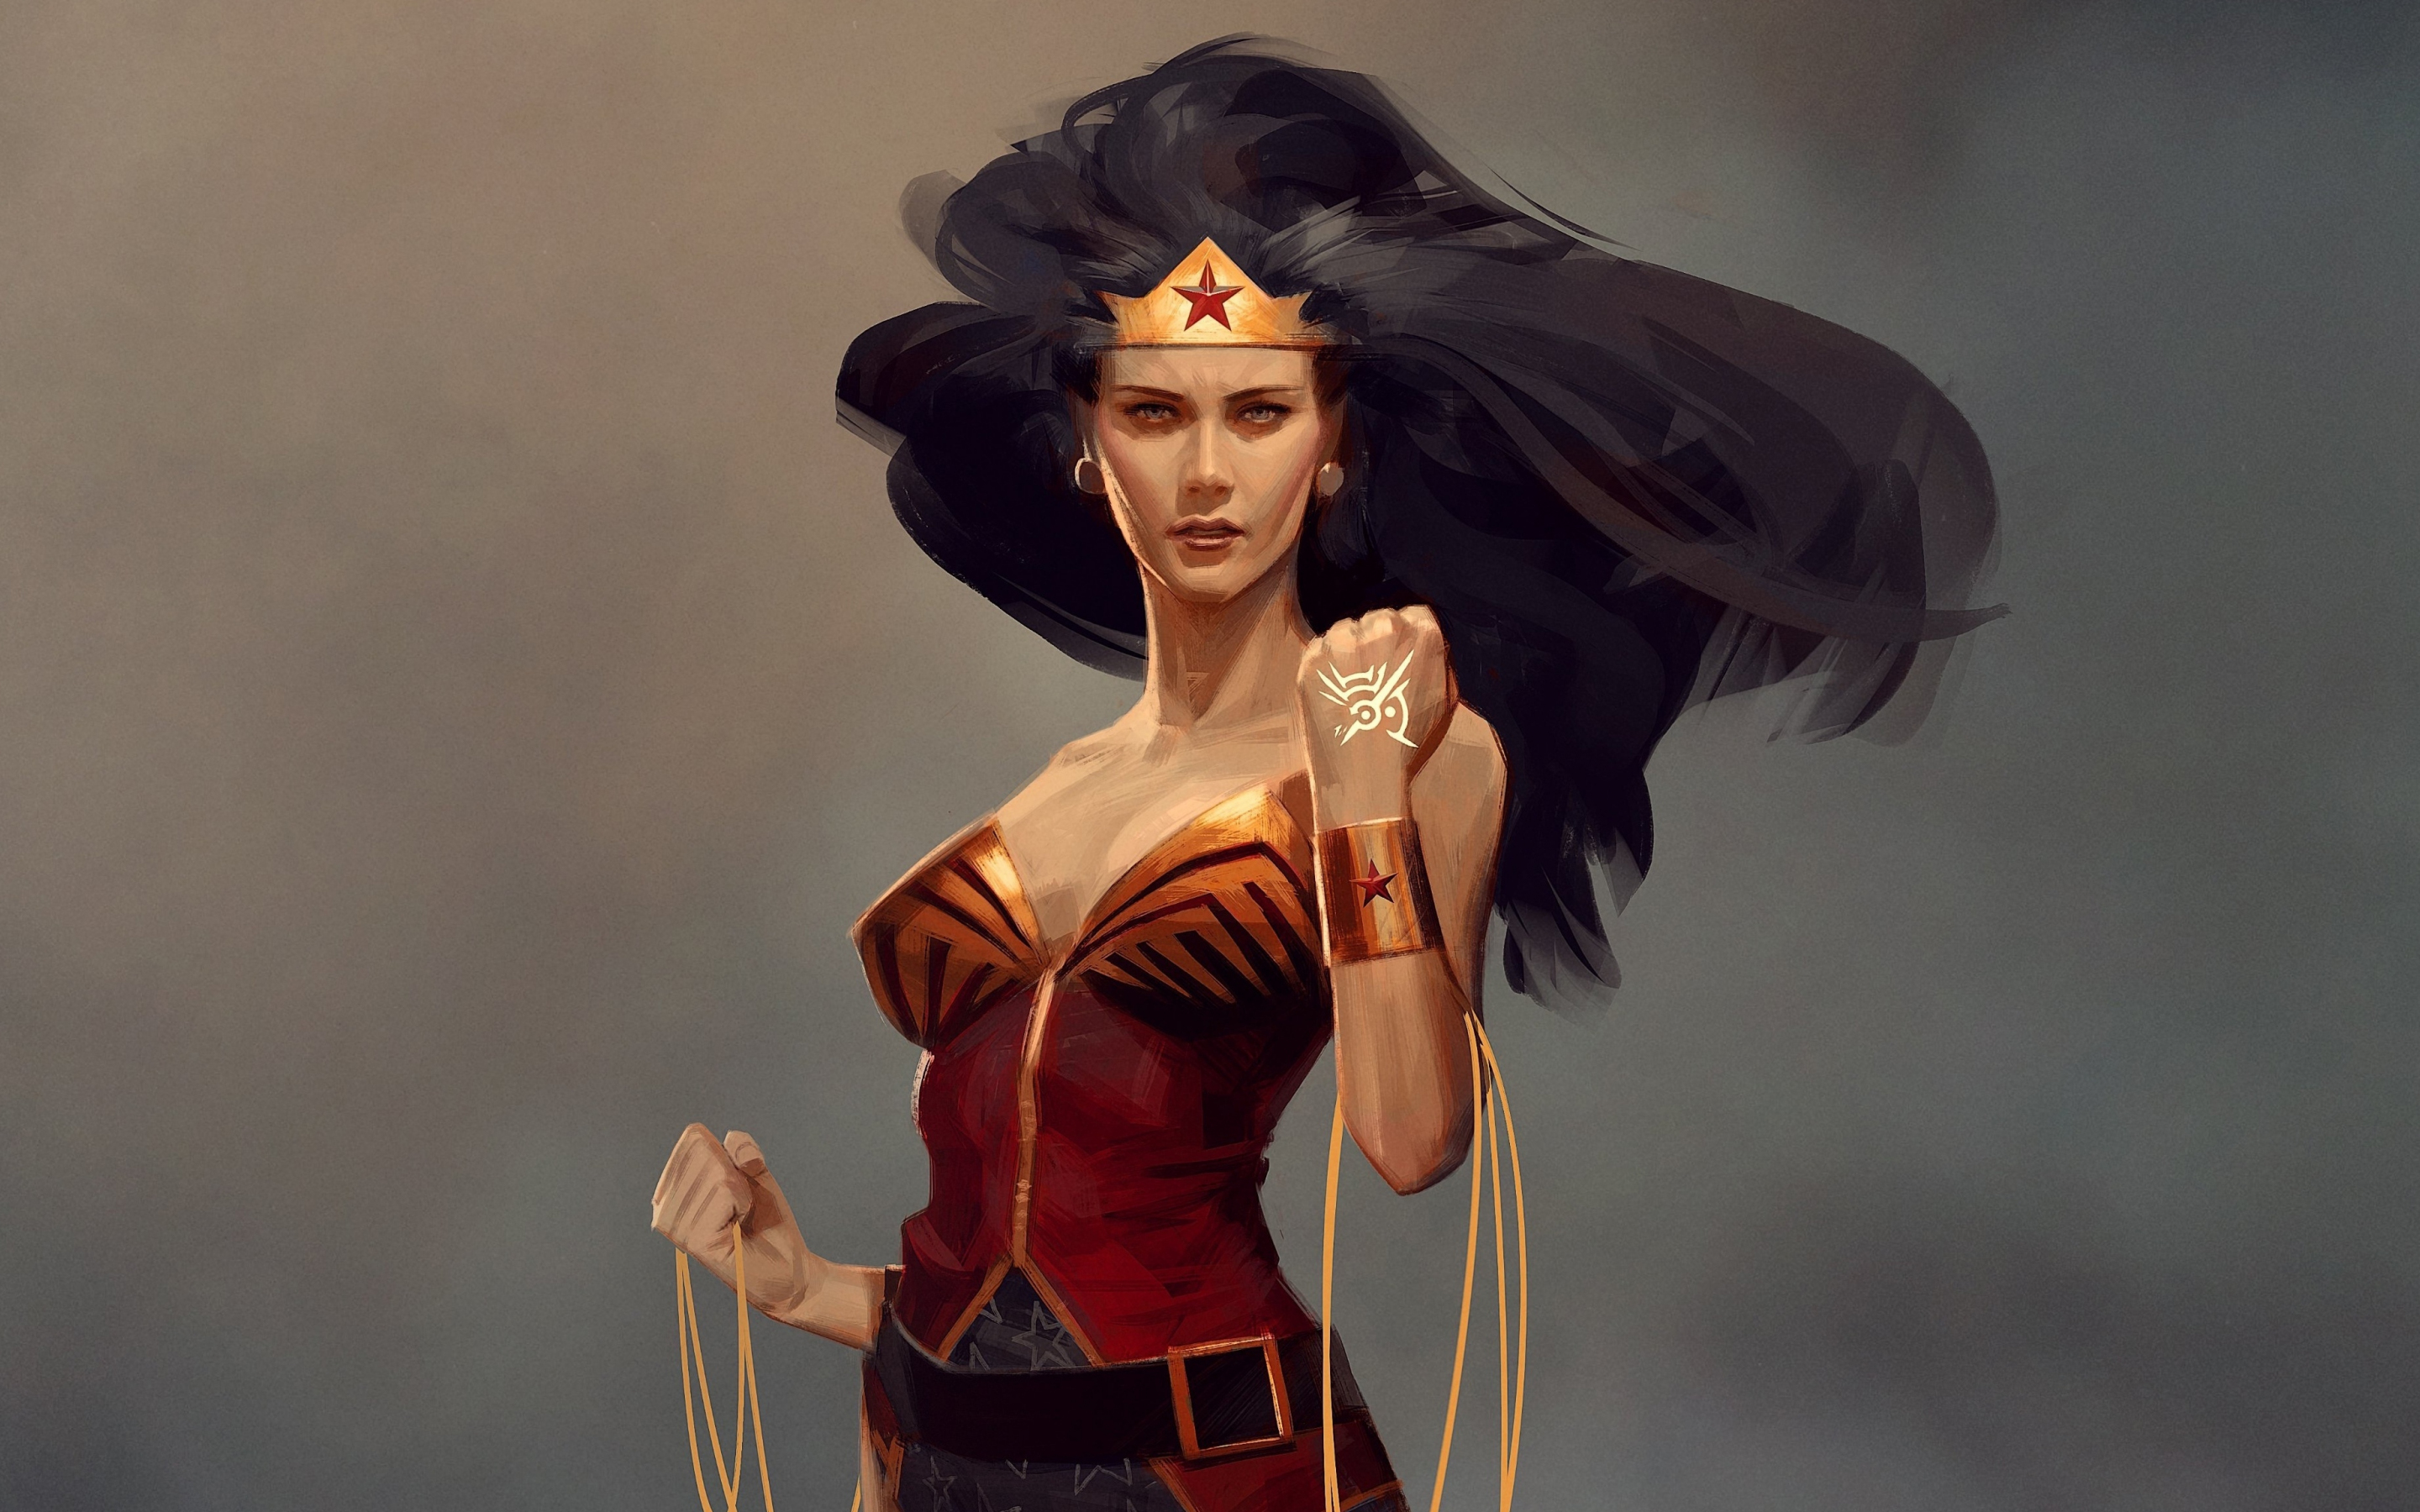 Wonder Woman, hair flowing in hair, fan art, 2880x1800 wallpaper